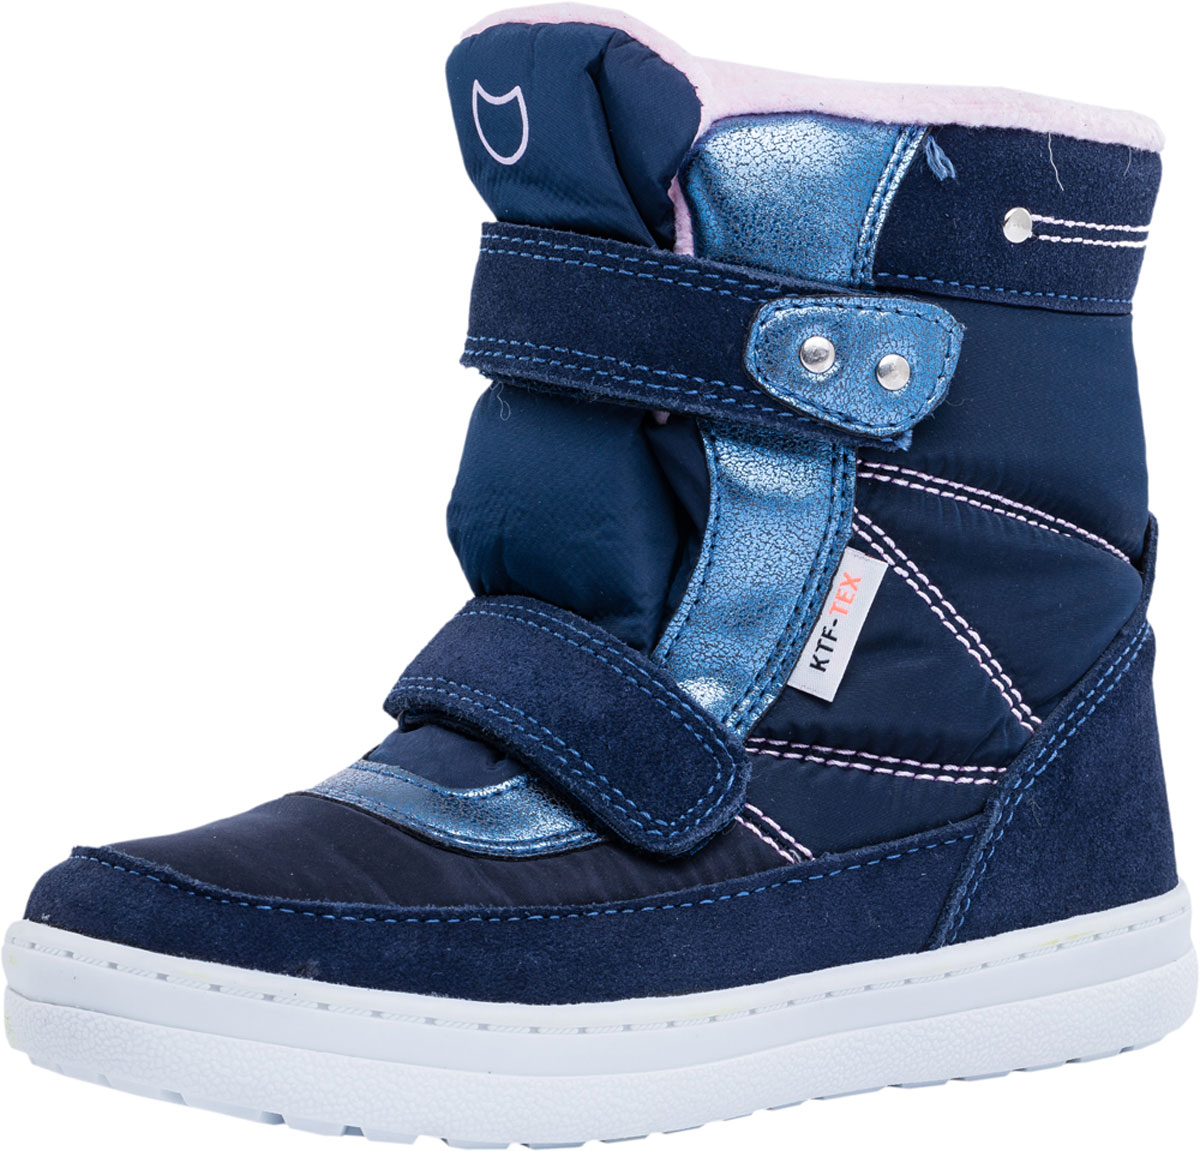 Ботинки для девочки Котофей, цвет: синий. 654950-41. Размер 34